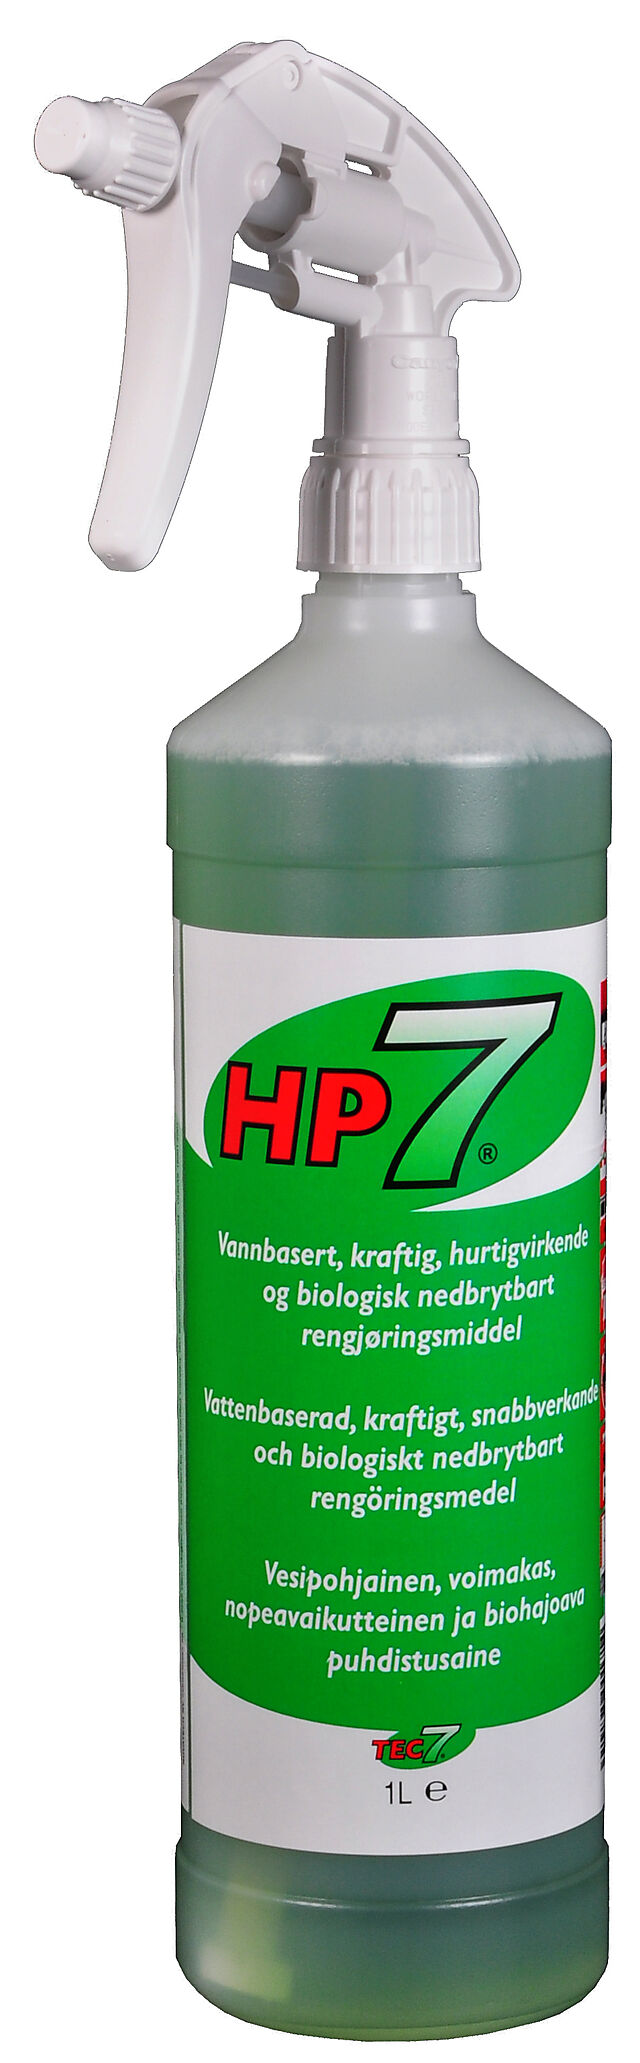 Relekta Rengjøringsmiddel HP7 1 liter sprayflaske 1